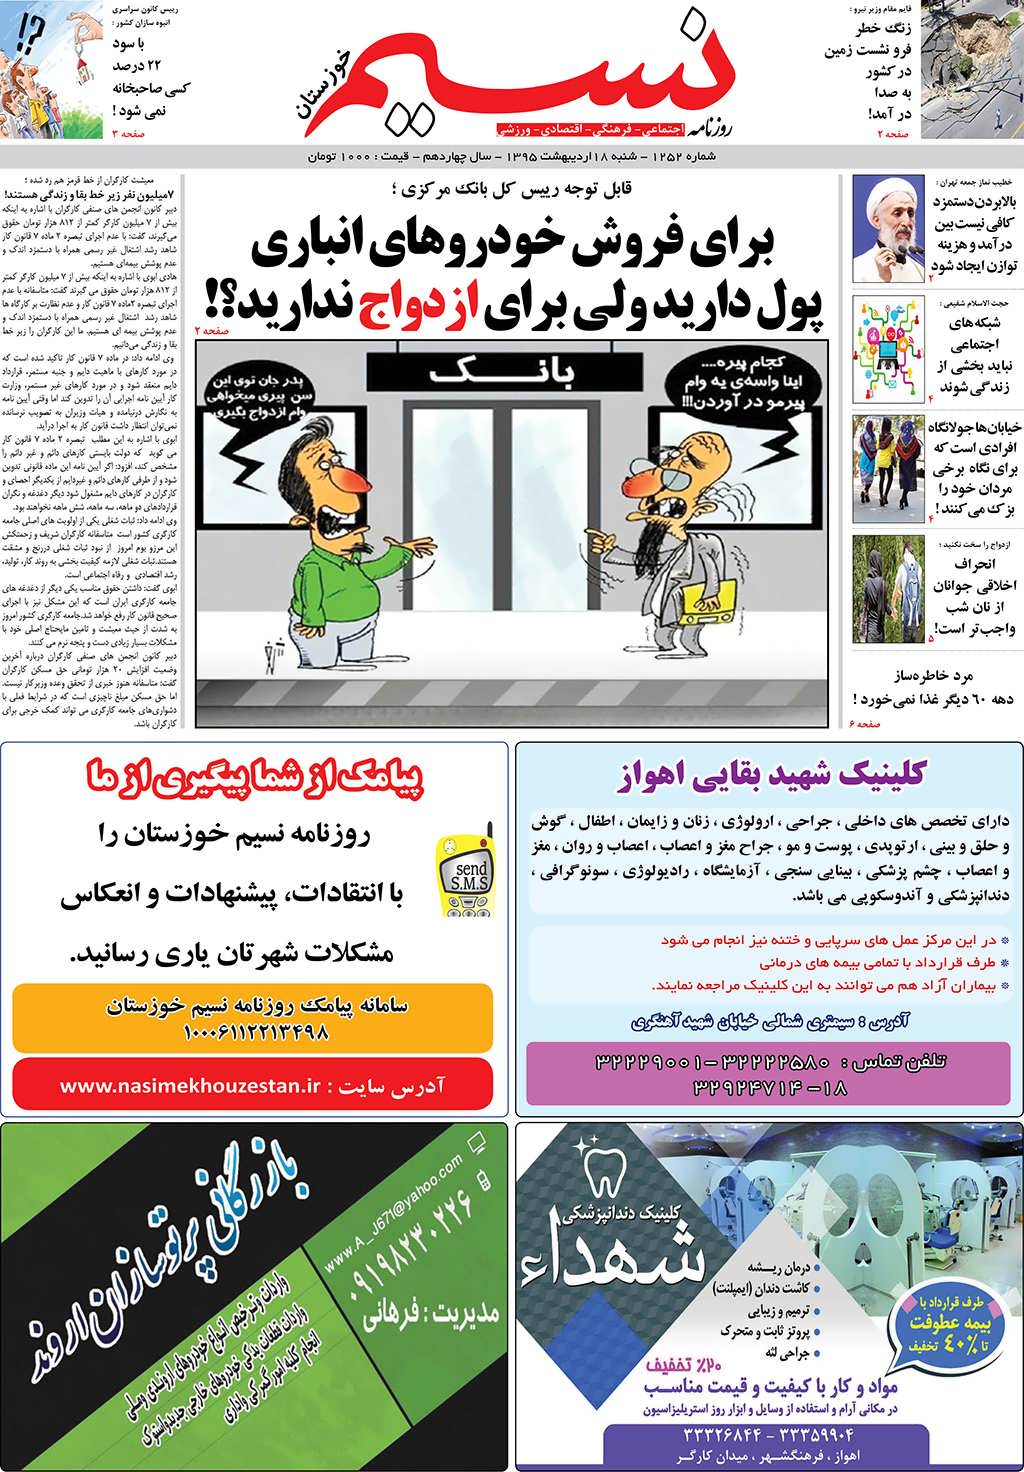 صفحه اصلی روزنامه نسیم شماره 252